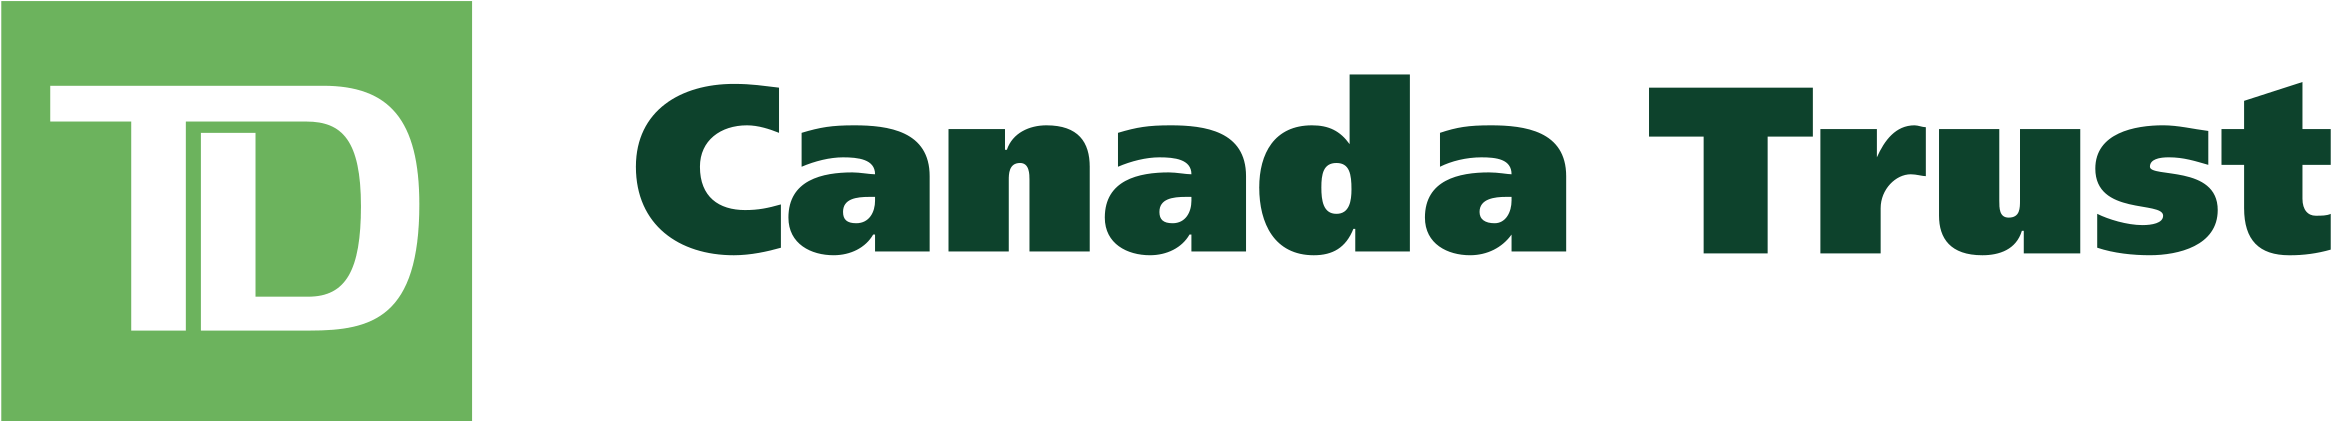 TD canada-trust-logo